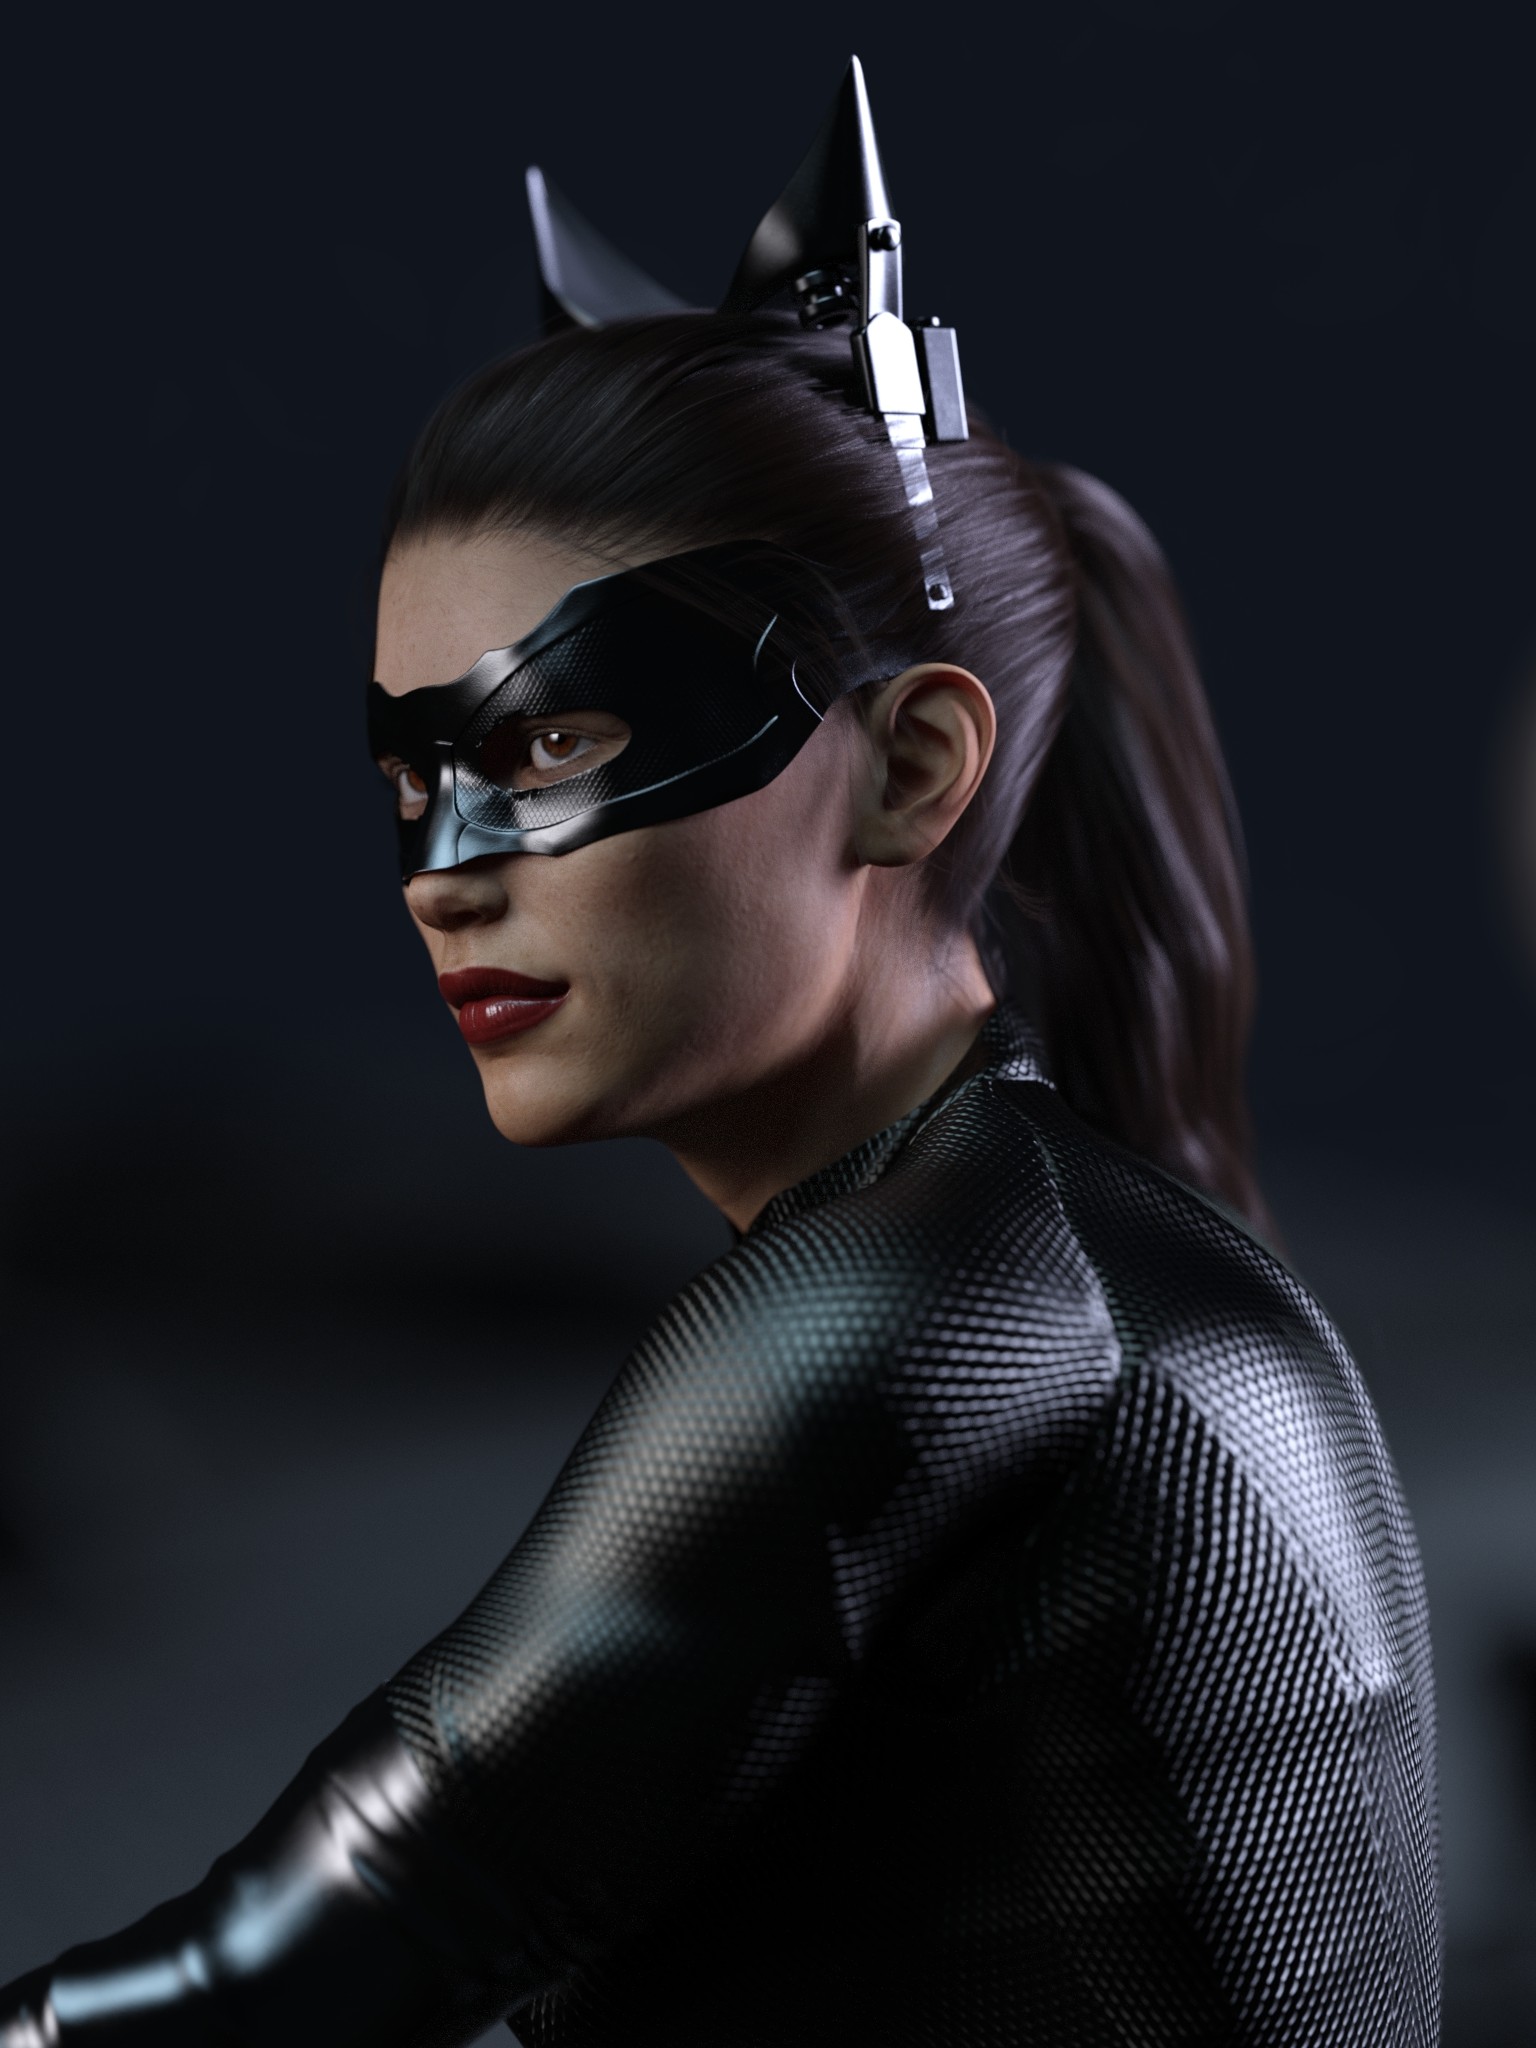 Dahri Al Ghul - Catwoman portrait in profile